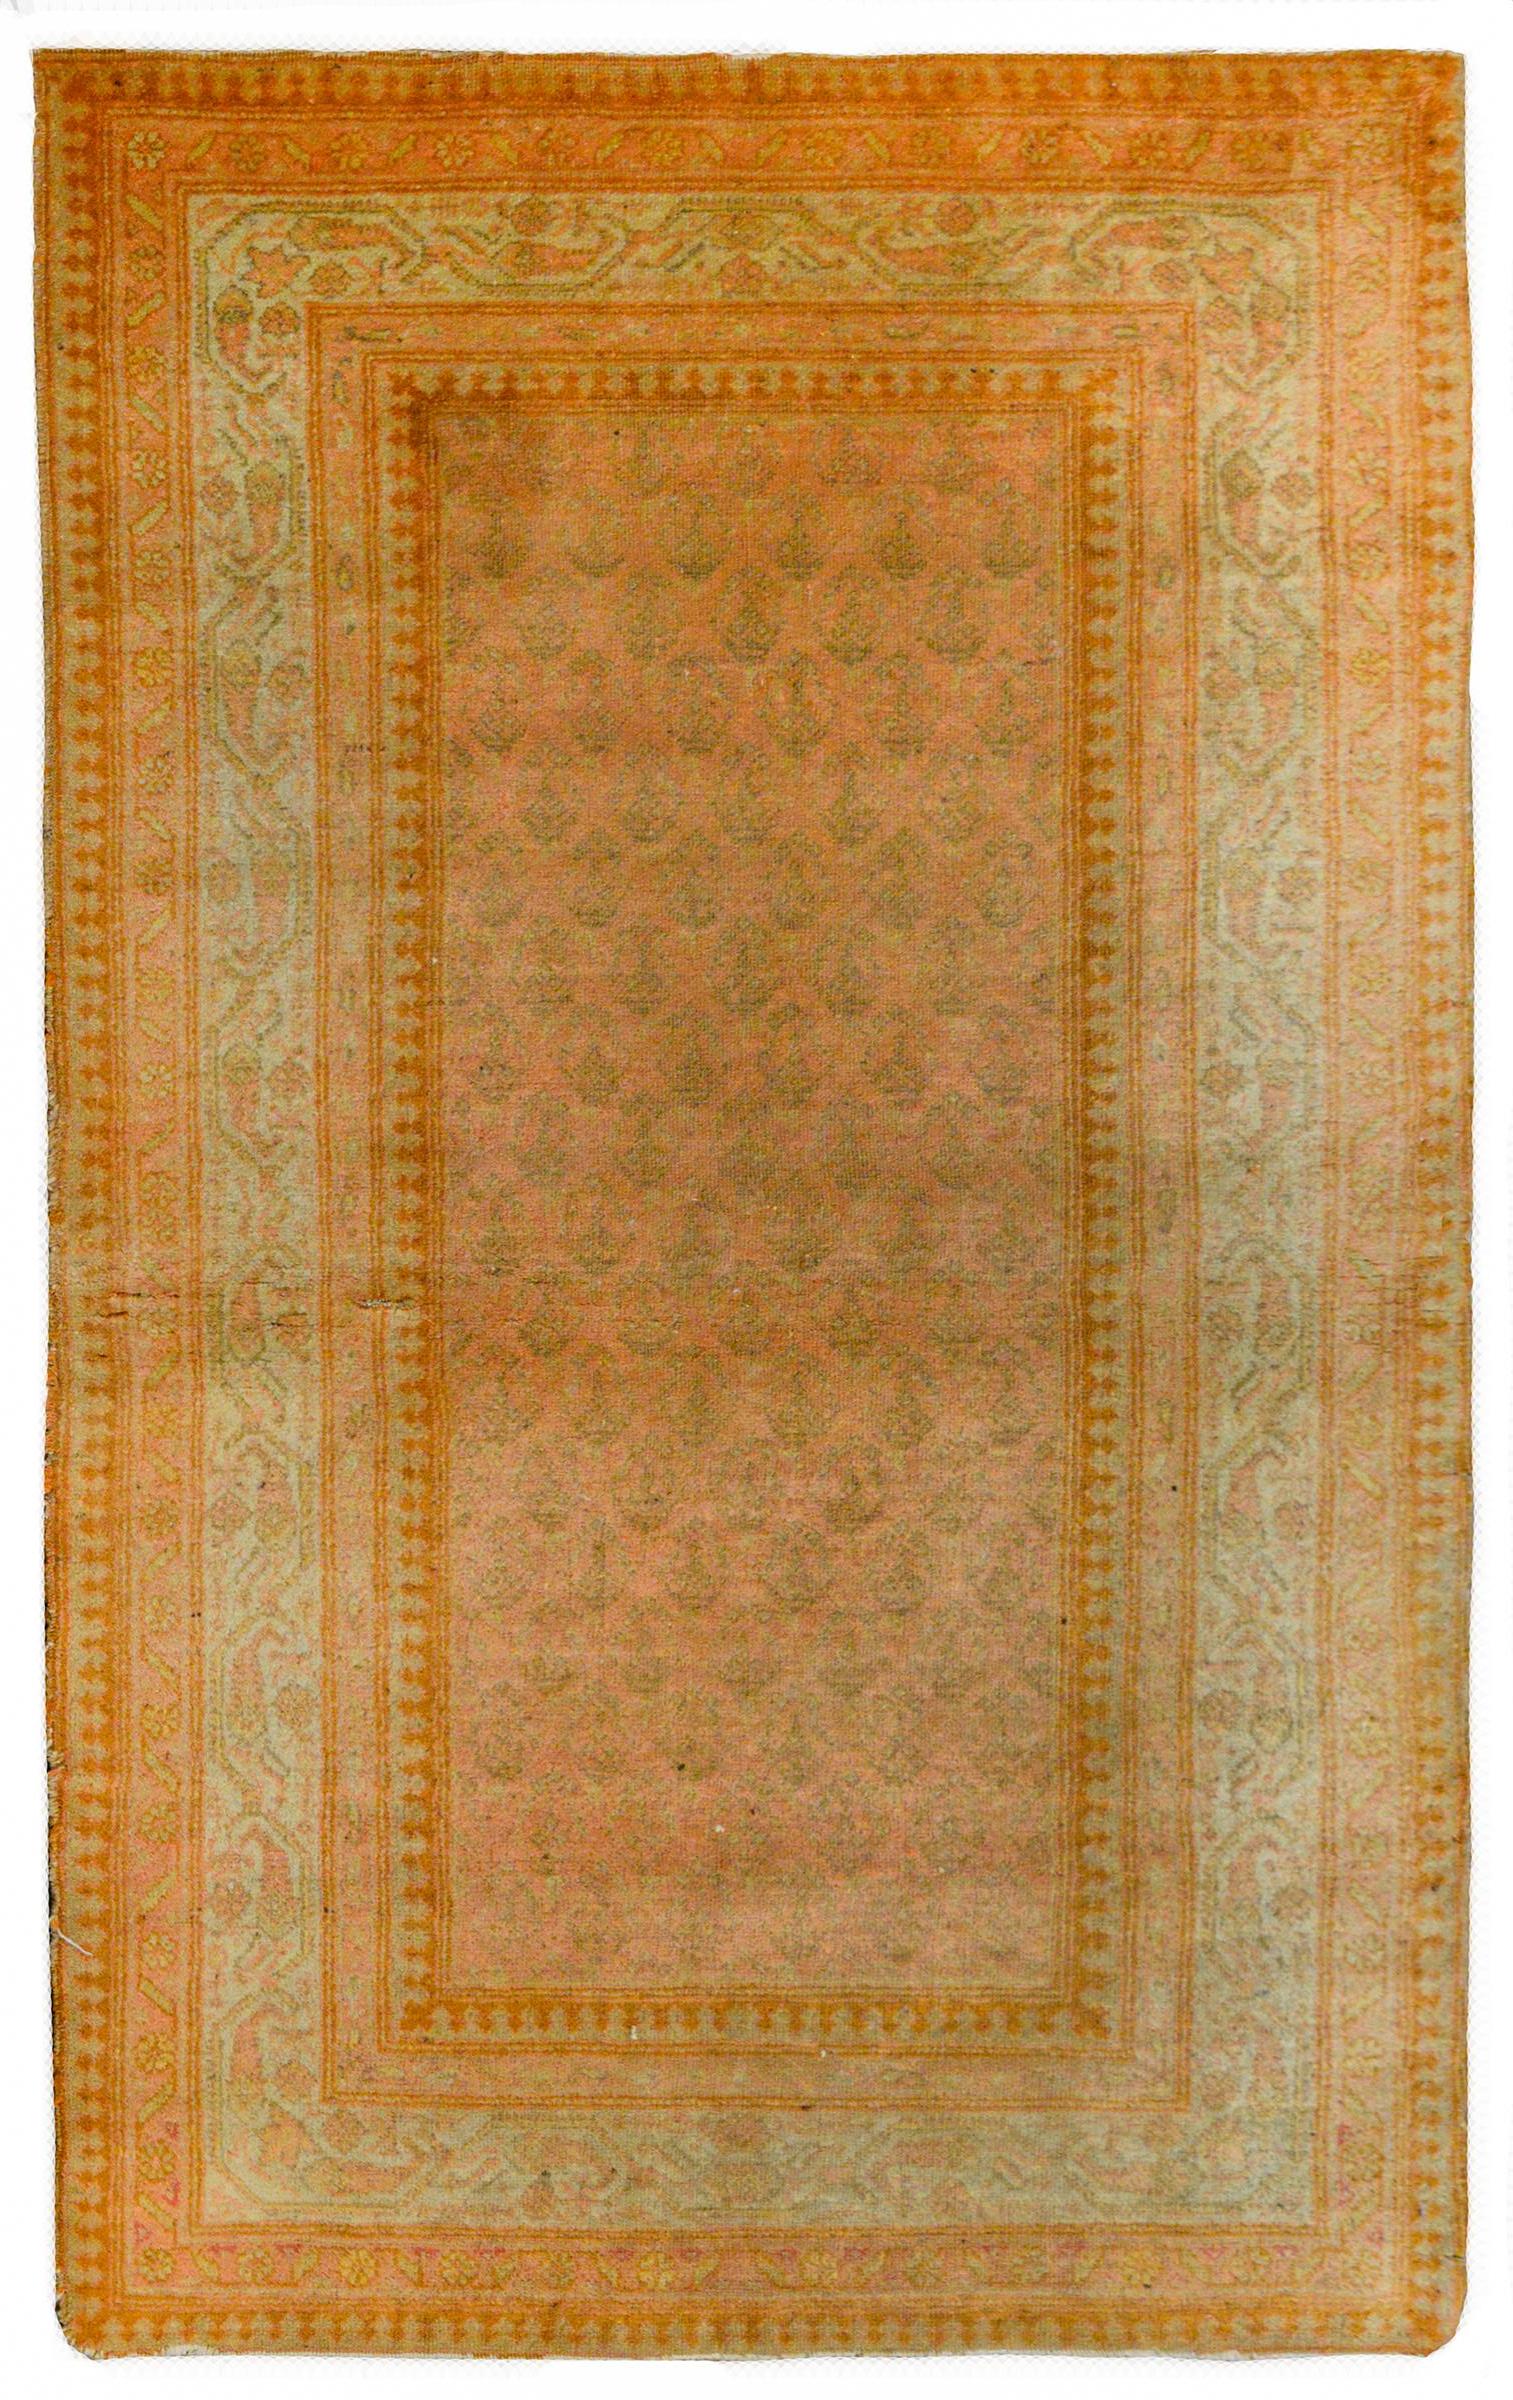 Ein wundervoller persischer Seraband-Teppich aus dem frühen 20. Jahrhundert mit einem Allover-Paisleymuster, gewebt in einer einfachen Ton-in-Ton-Farbkombination aus Rosa und Taupe, umgeben von einer breiten Bordüre mit mehreren stilisierten, floral